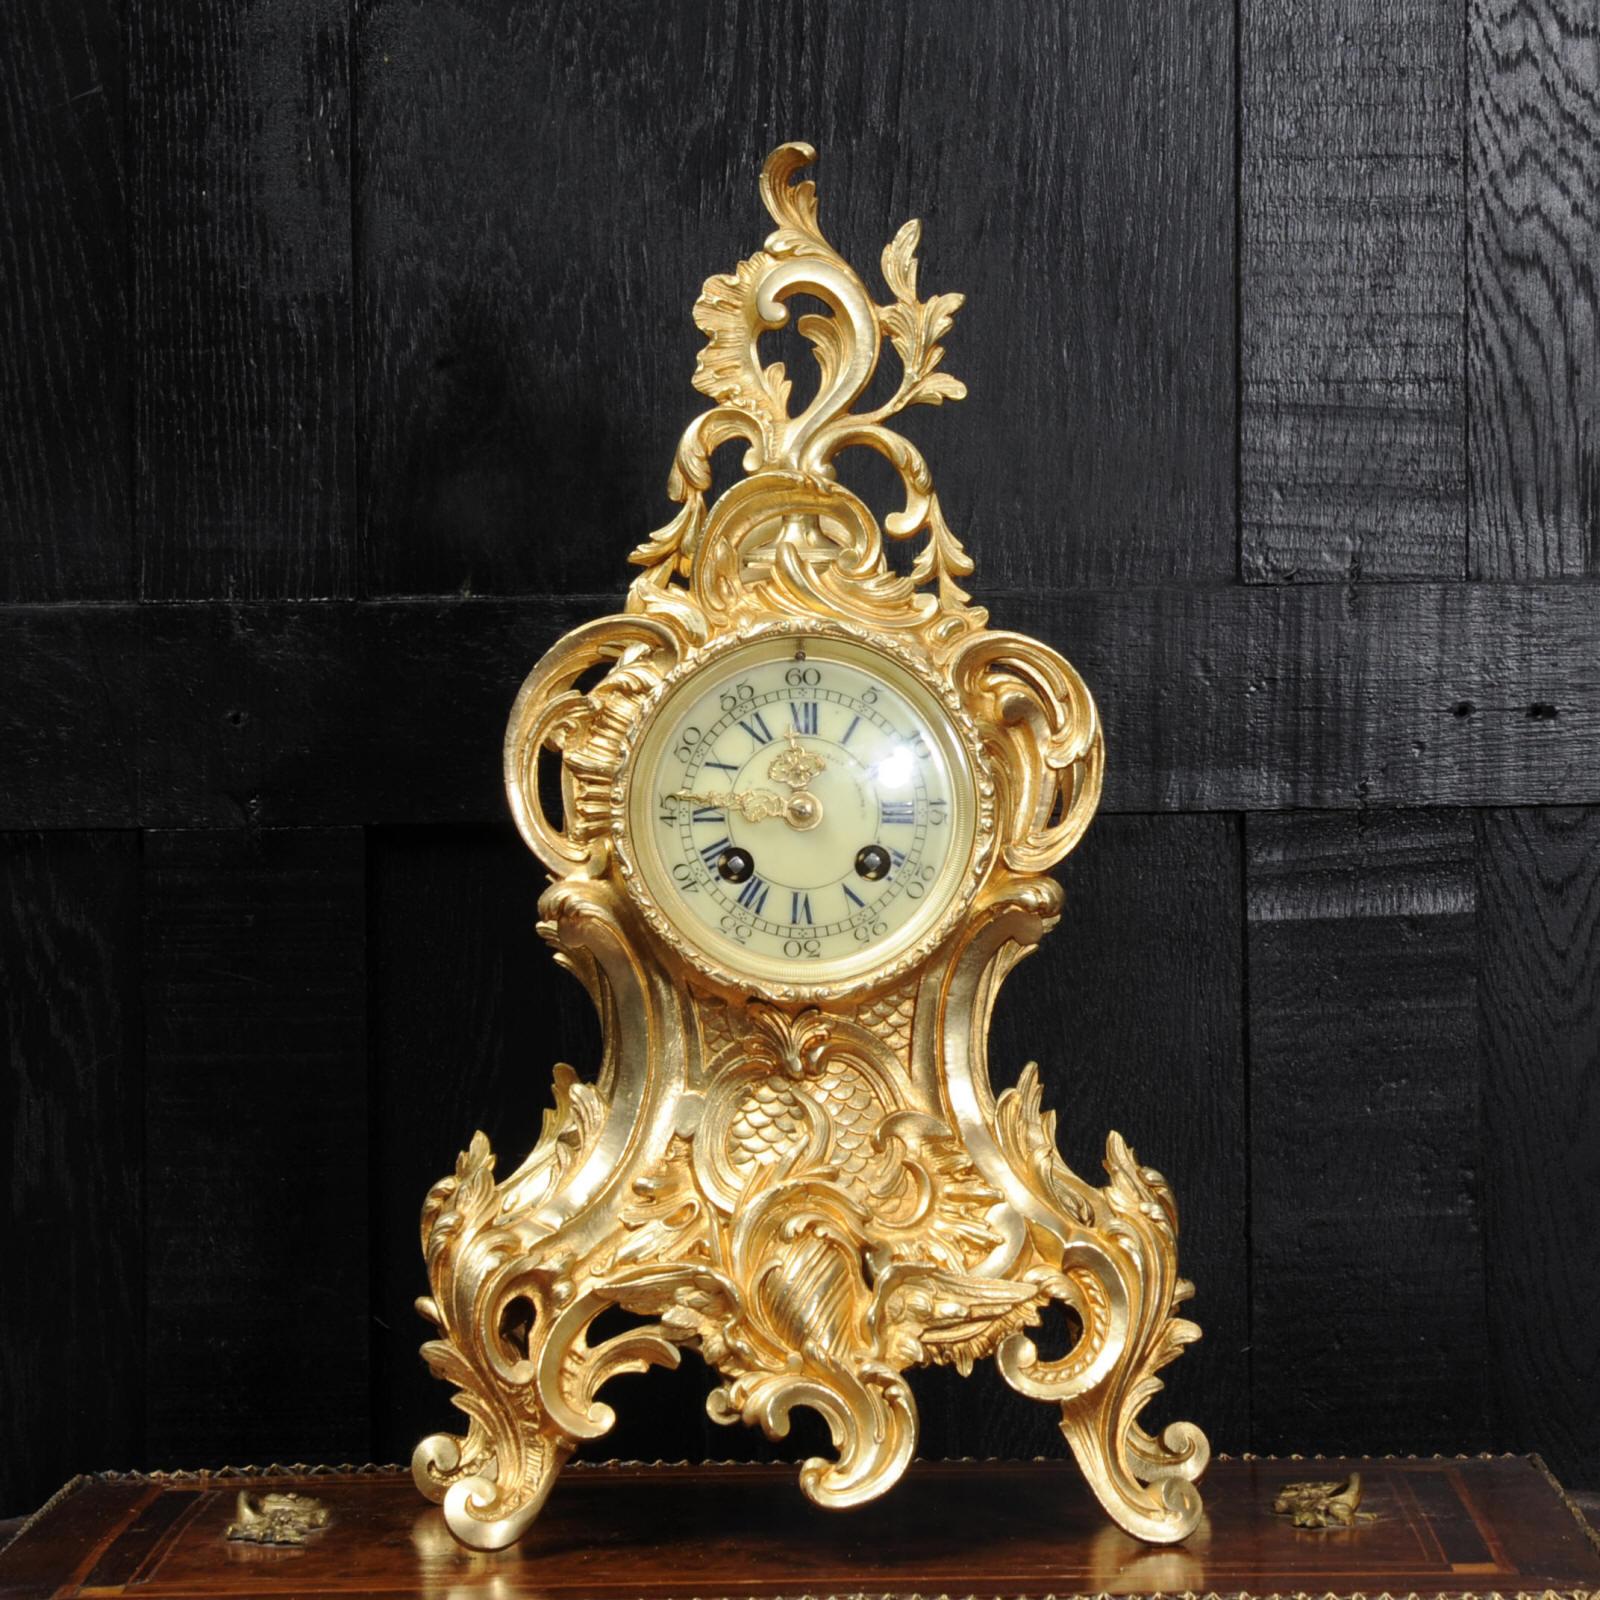 Une belle horloge française ancienne par Louis Japy et vendue par la Maison Henri Riondet de Paris:: audacieusement modelée dans le style Rococo en bronze doré. La forme en trou de serrure est abondamment décorée de rinceaux en 